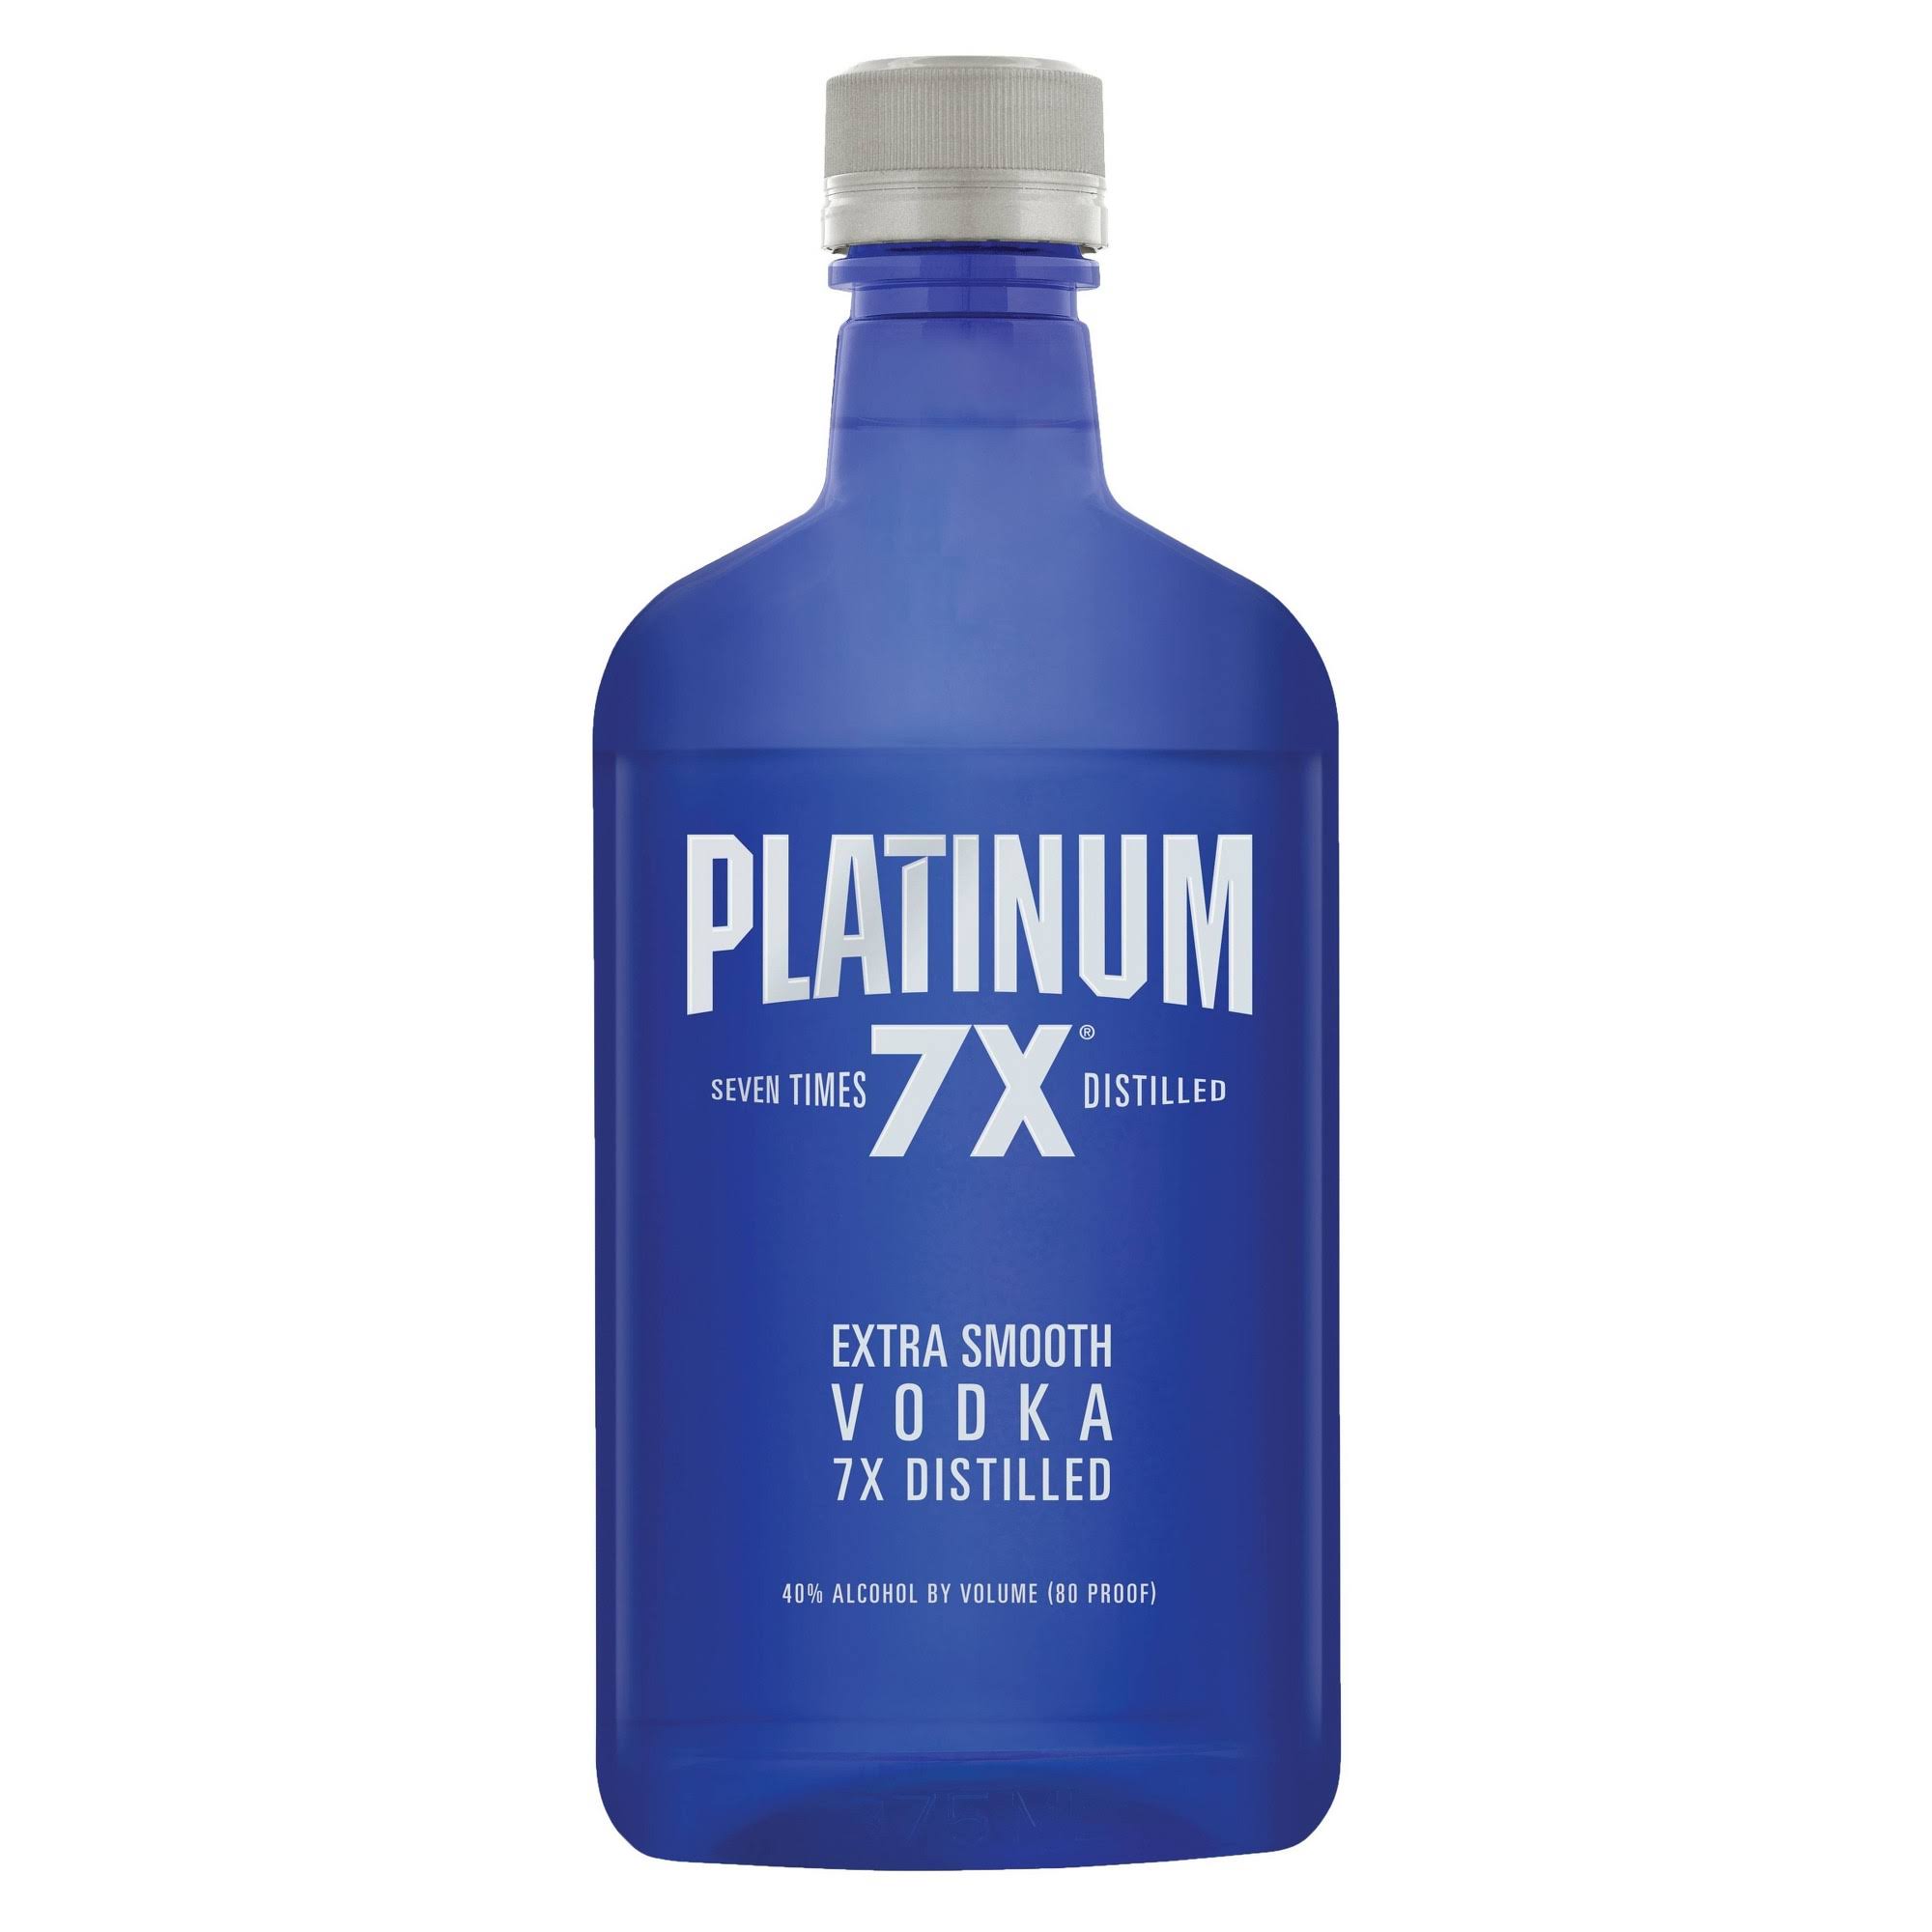 Platinum 7X Vodka, Extra Smooth, 7x Distilled - 375 ml